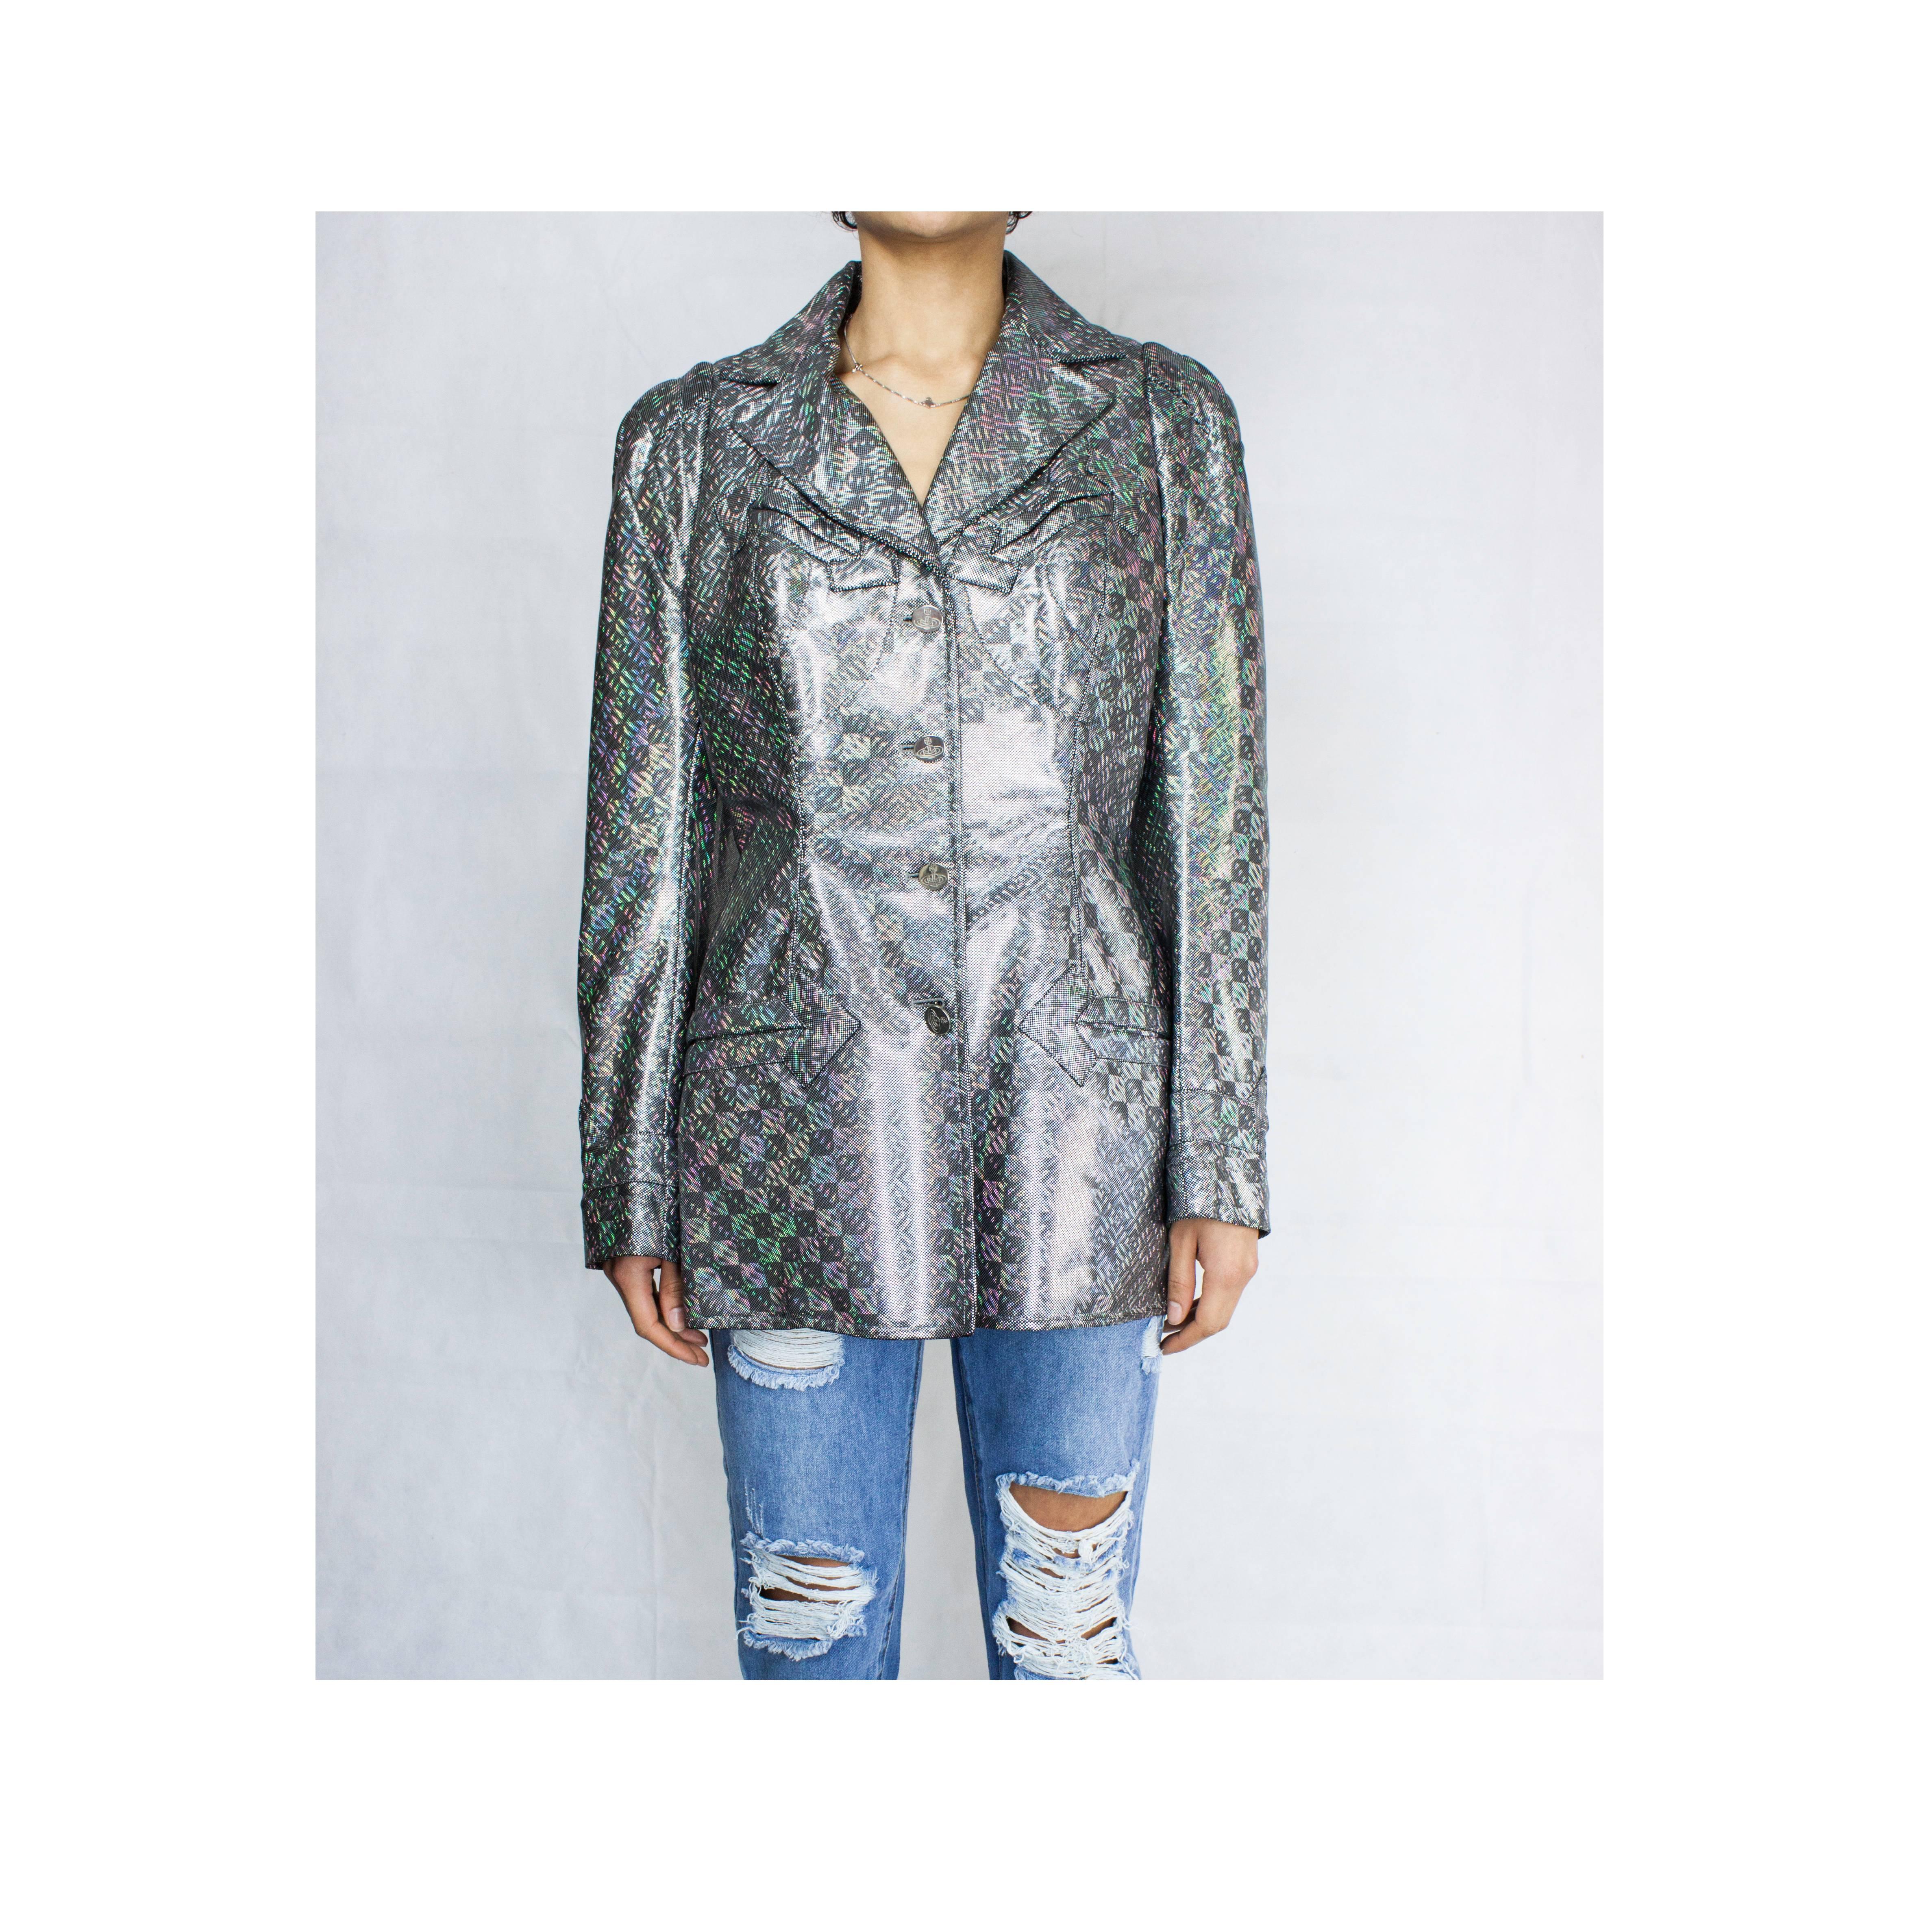 
Vivienne Westwood a conçu des vêtements outrageusement flamboyants. Ils sont beaux et souvent non conventionnels. Cette veste offre une belle opportunité de posséder un beau morceau de l'histoire de la mode du défunt créateur.

Cette veste rappelle